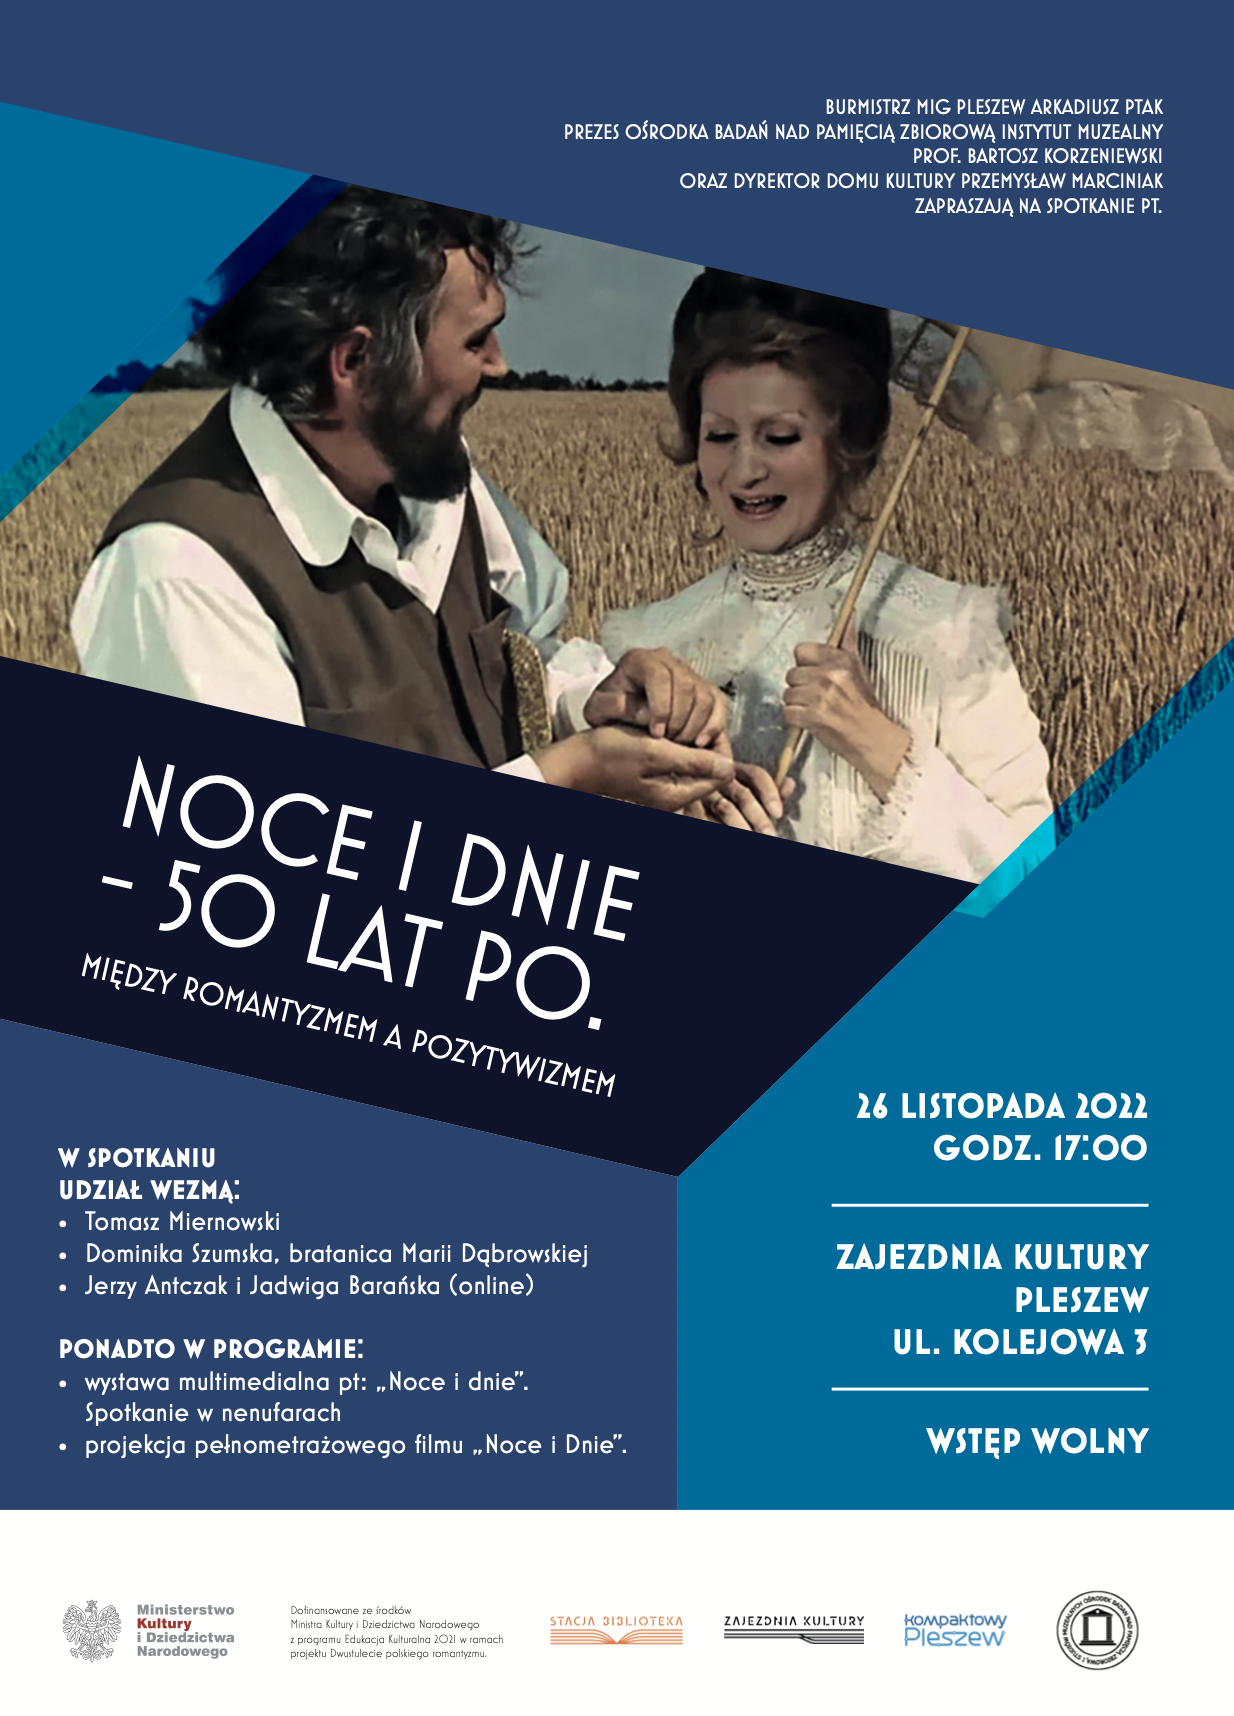 Plakat wydarzenia "noce i dnie 50 lat po" między romantyzmem a pozytywizmem 26 listopada o godzinie 17:00 w Zajezdni Kultury w Pleszewie